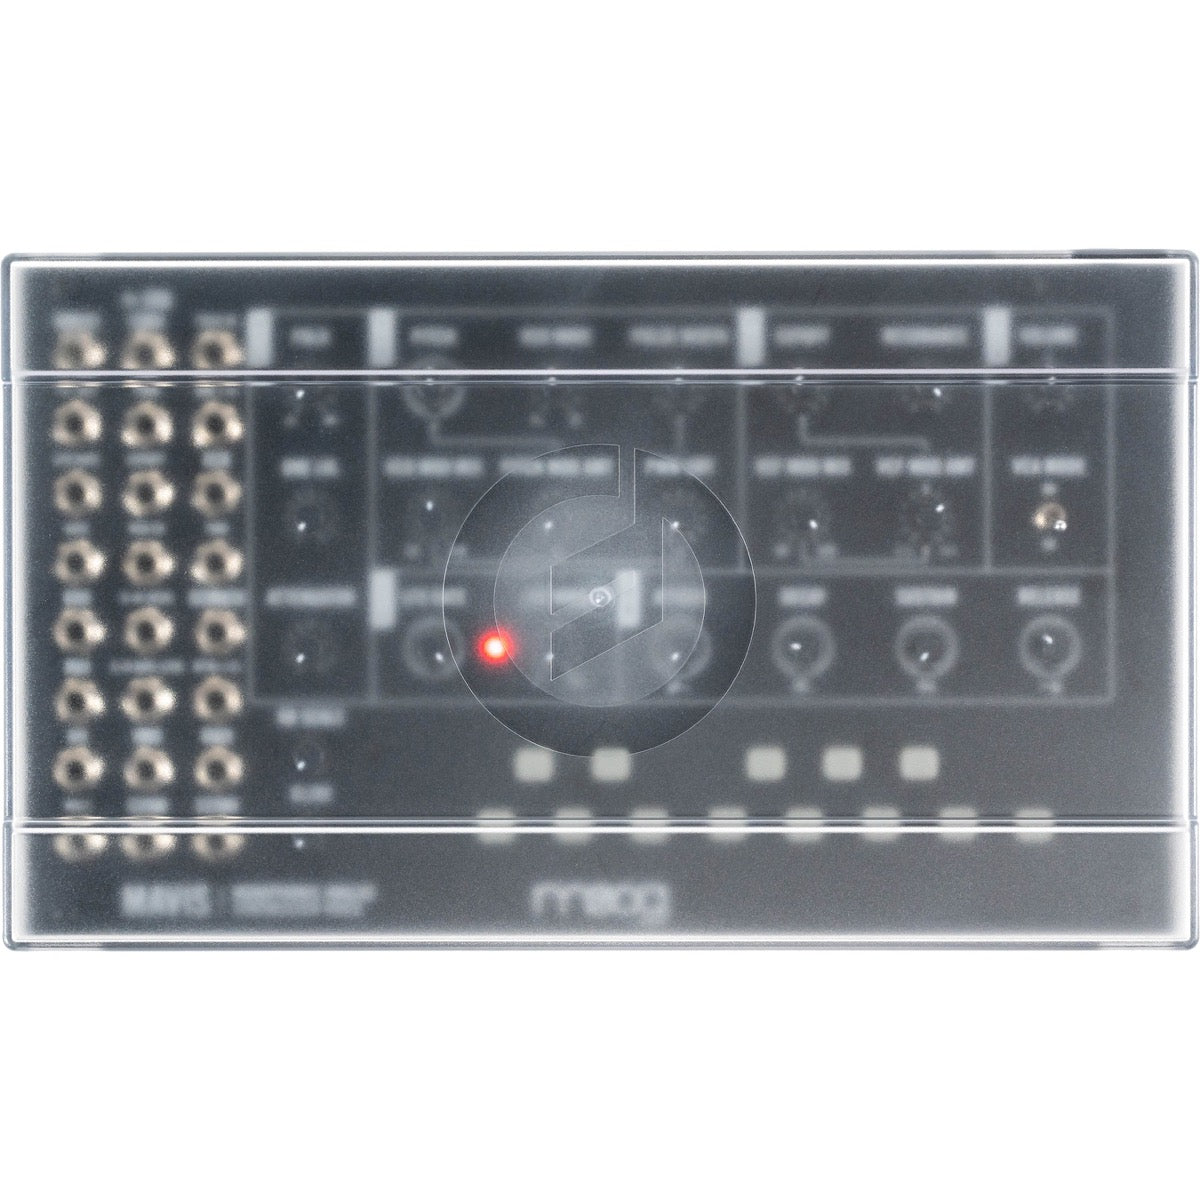 Moog Mavis Build-it-Yourself Analog Synthesizer